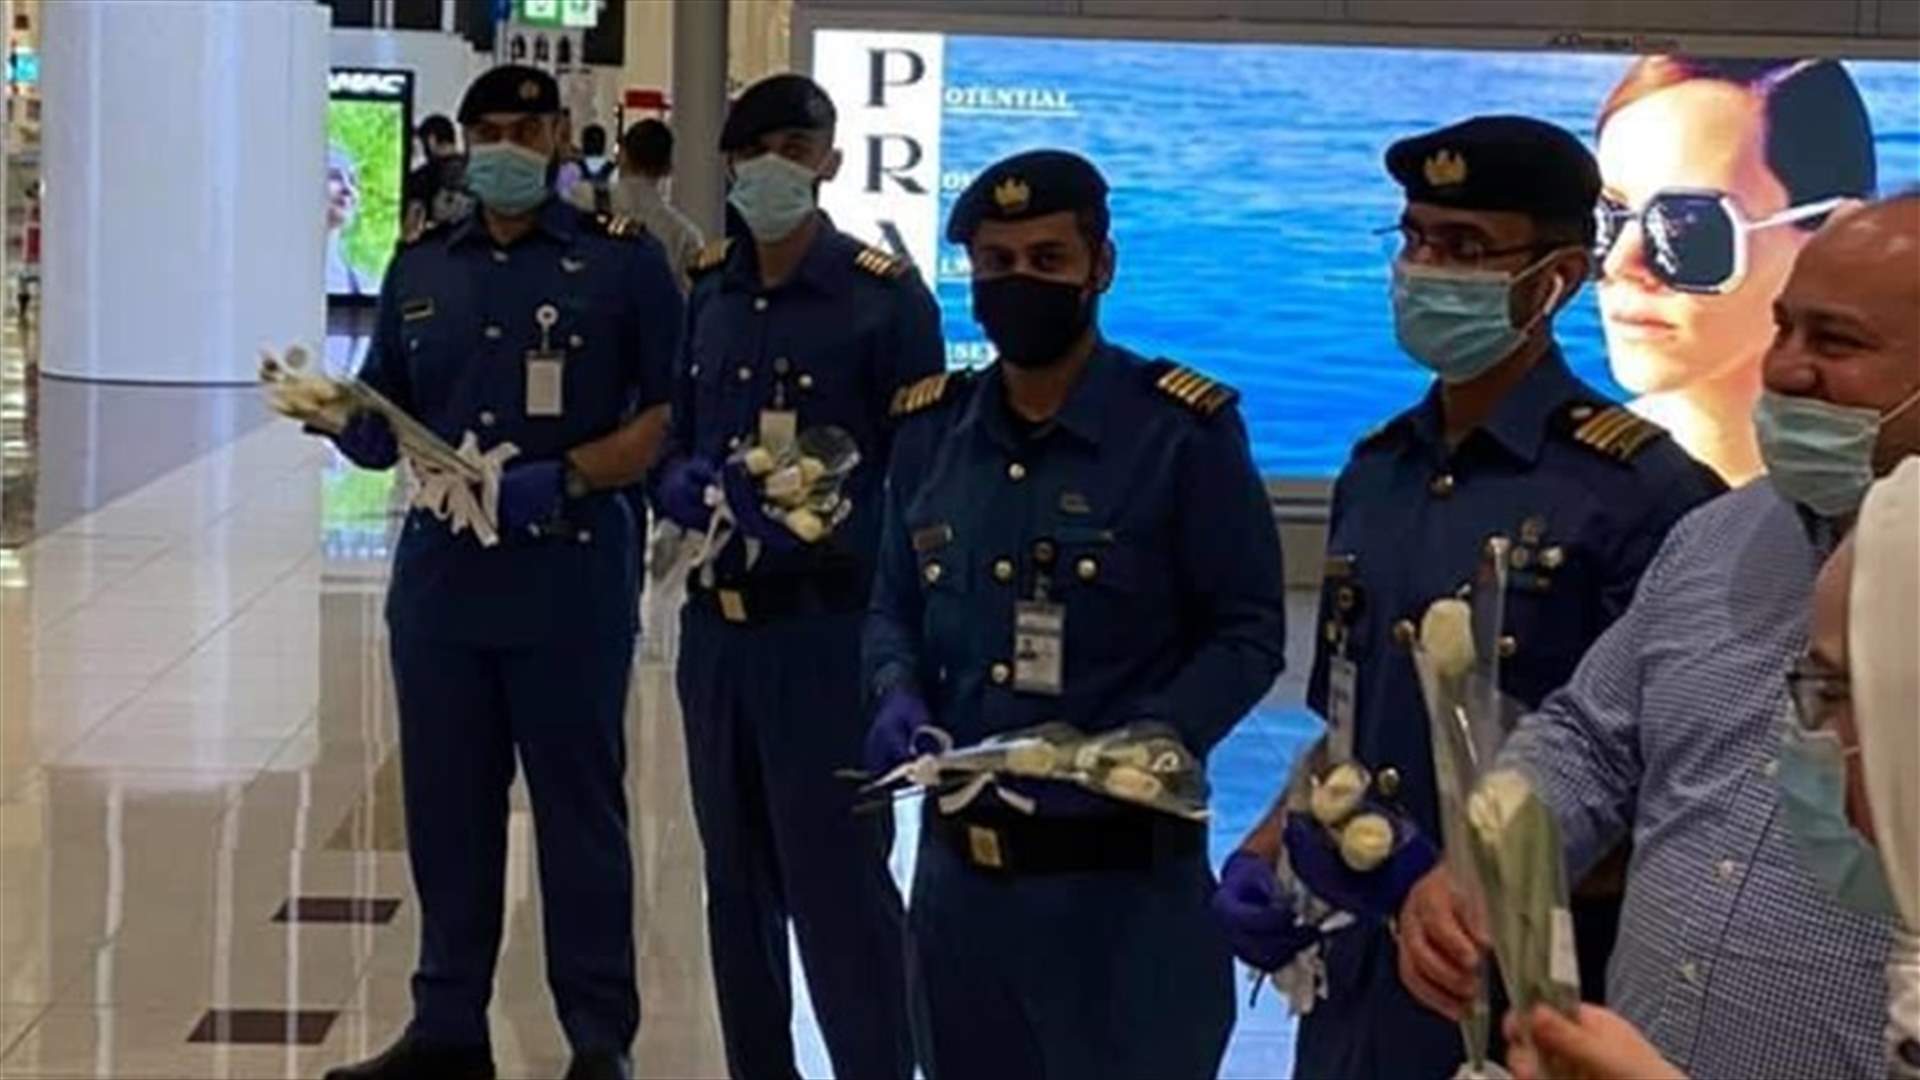 &quot;نرحّب بكم في منزلكم&quot;... الإمارات تستقبل اللبنانيين في مطار دبي بالورود البيضاء وتمنيات السلامة (صور)